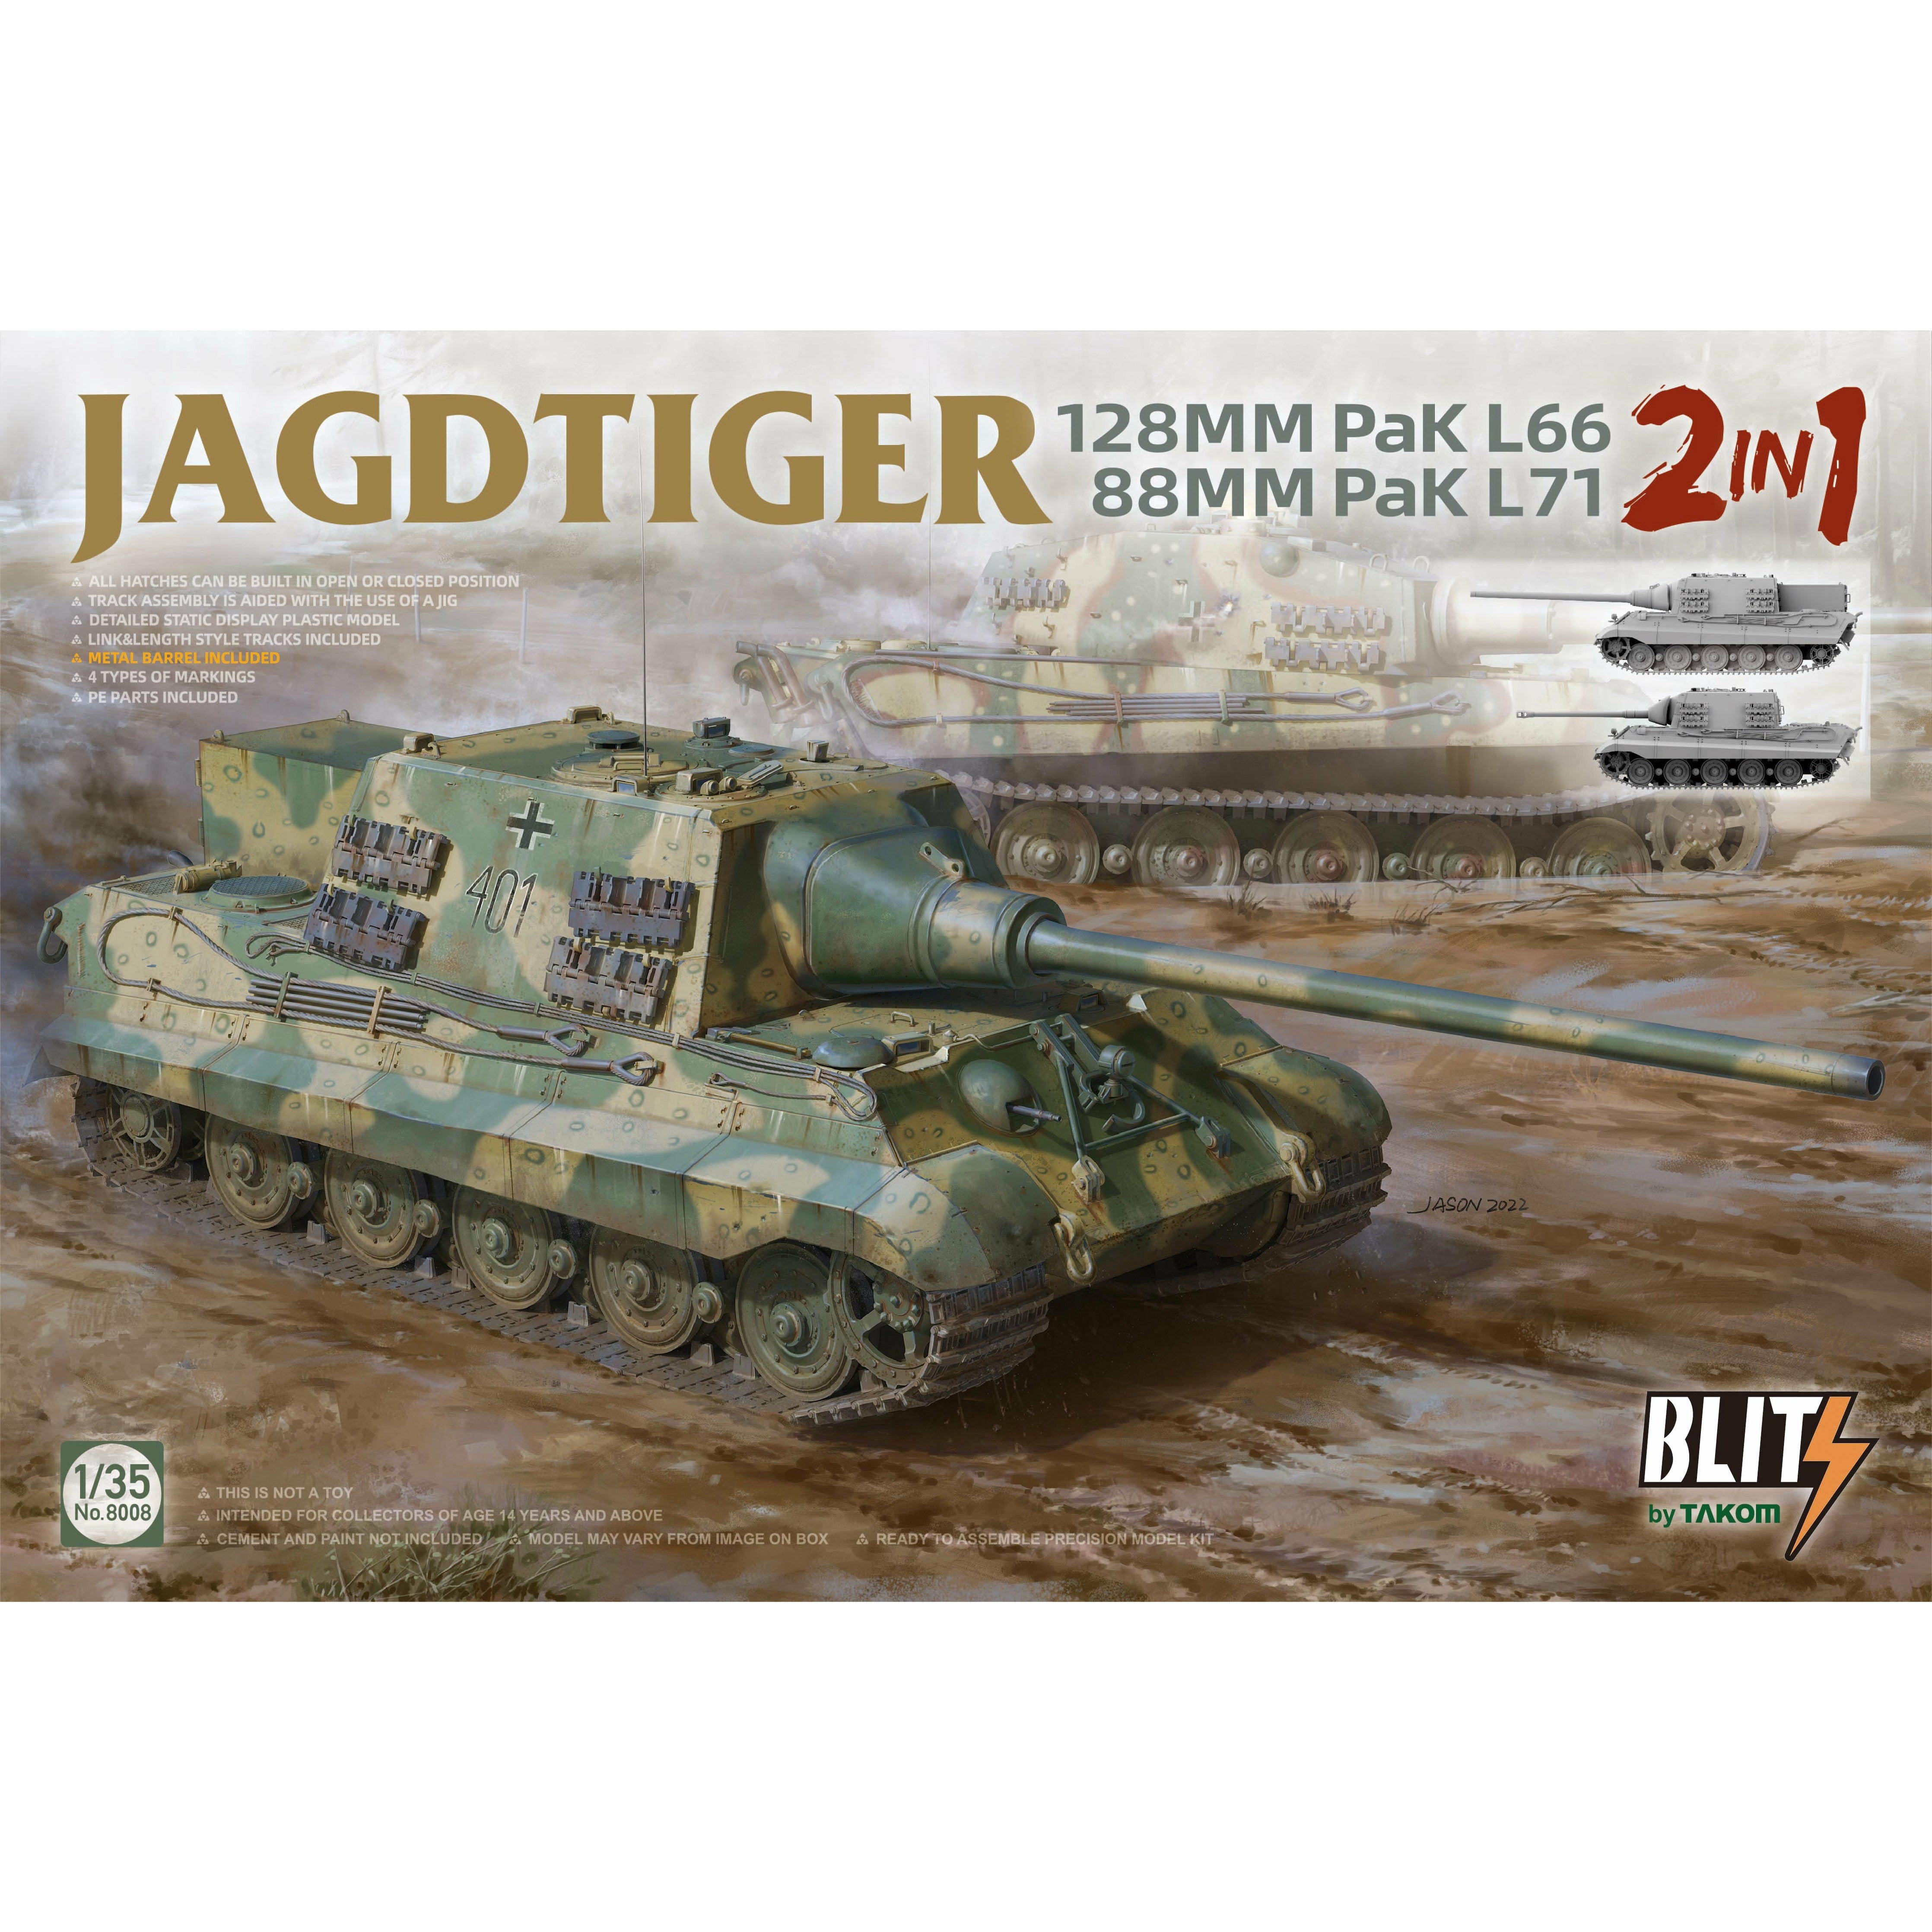 Jagdtiger 2in1 122mm Pak L66 & 88mm Pak L71 Blitz Series 1/35 #8008 by Takom